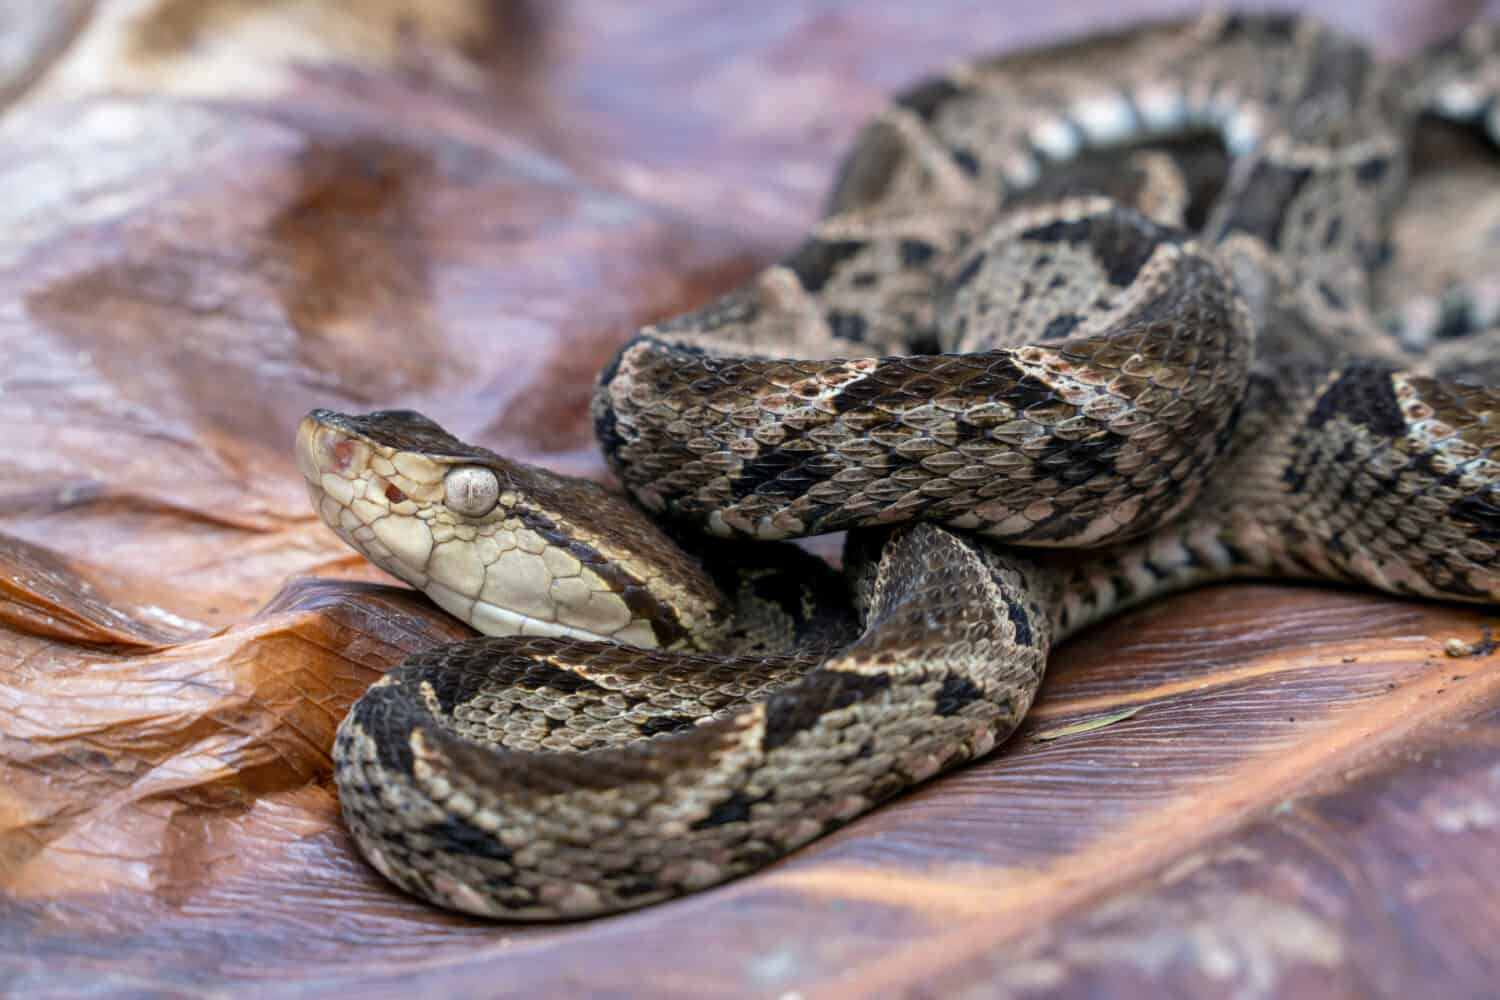 venomous Fer-de-lance (Bothrops asper) Pit Viper Snake - Terciopelo